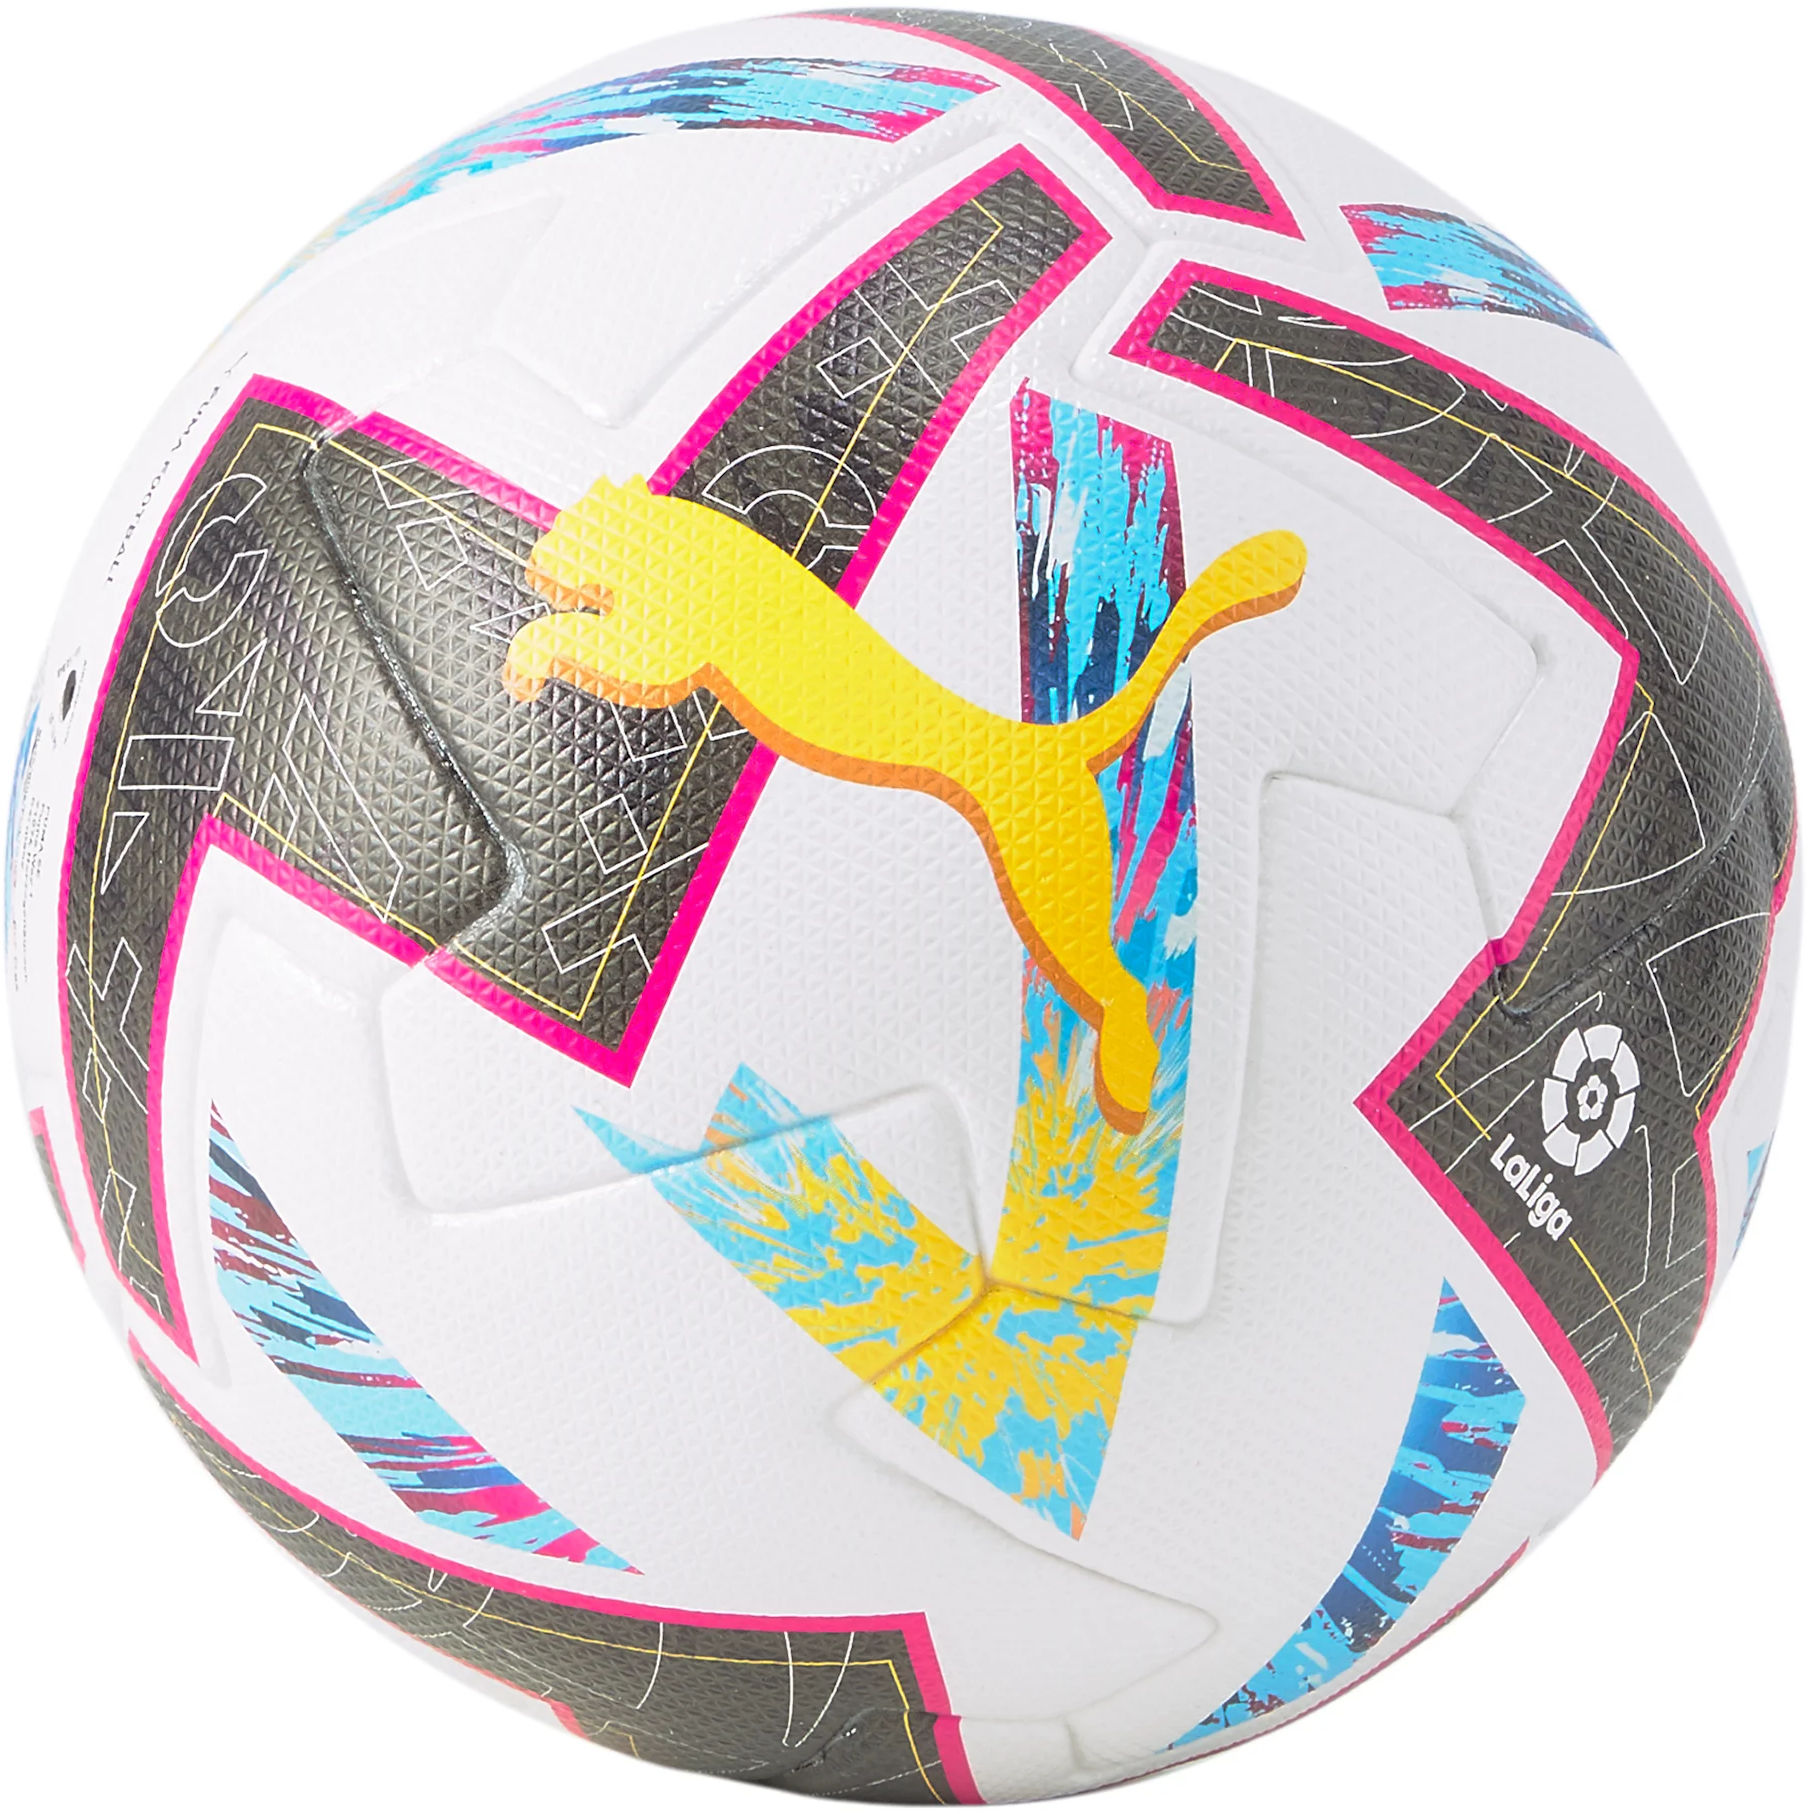 Balón Puma Orbita LaLiga 1 (FIFA Quality Pro)